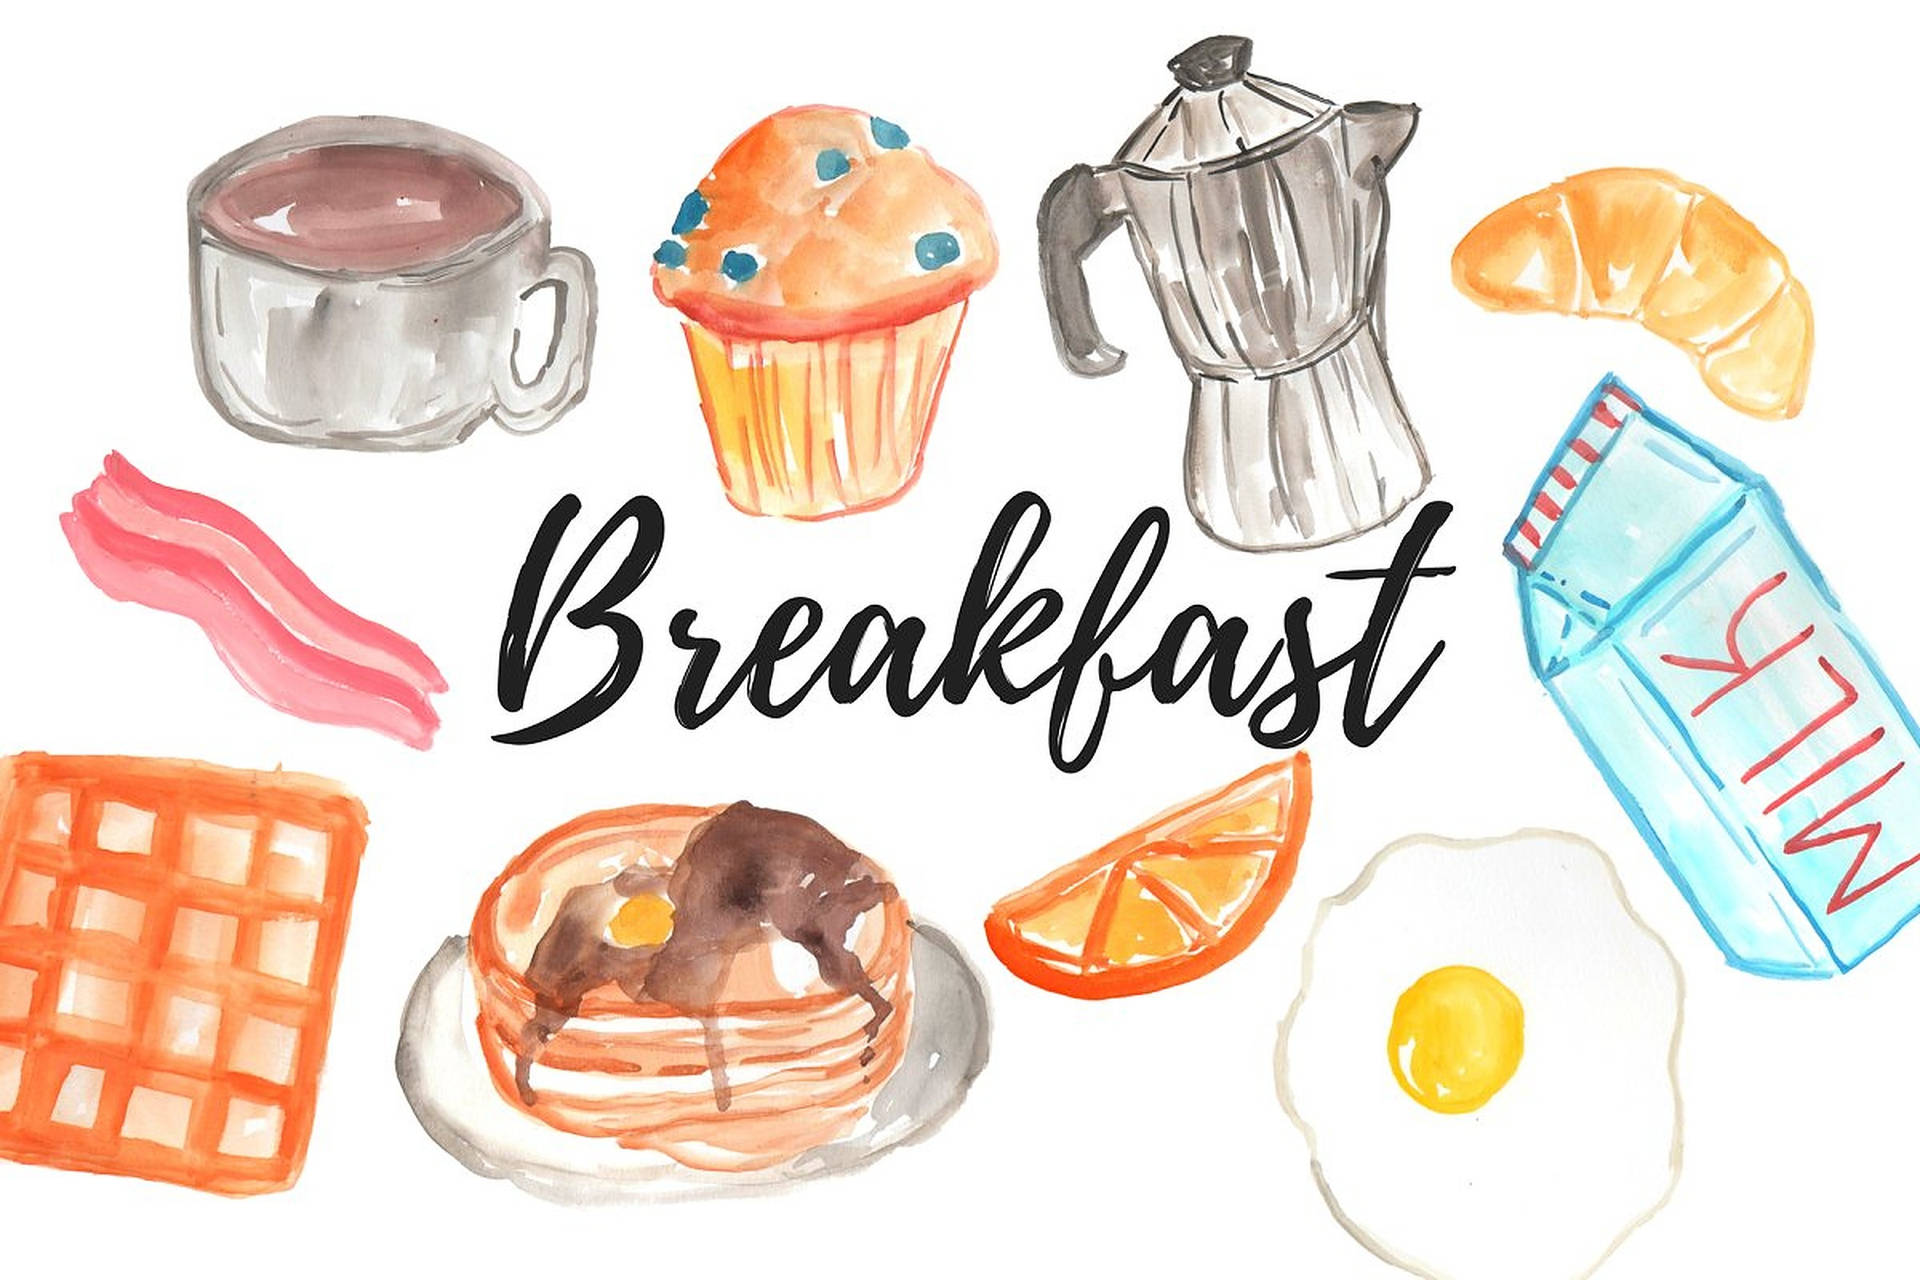 Breakfast Wallpaper Images